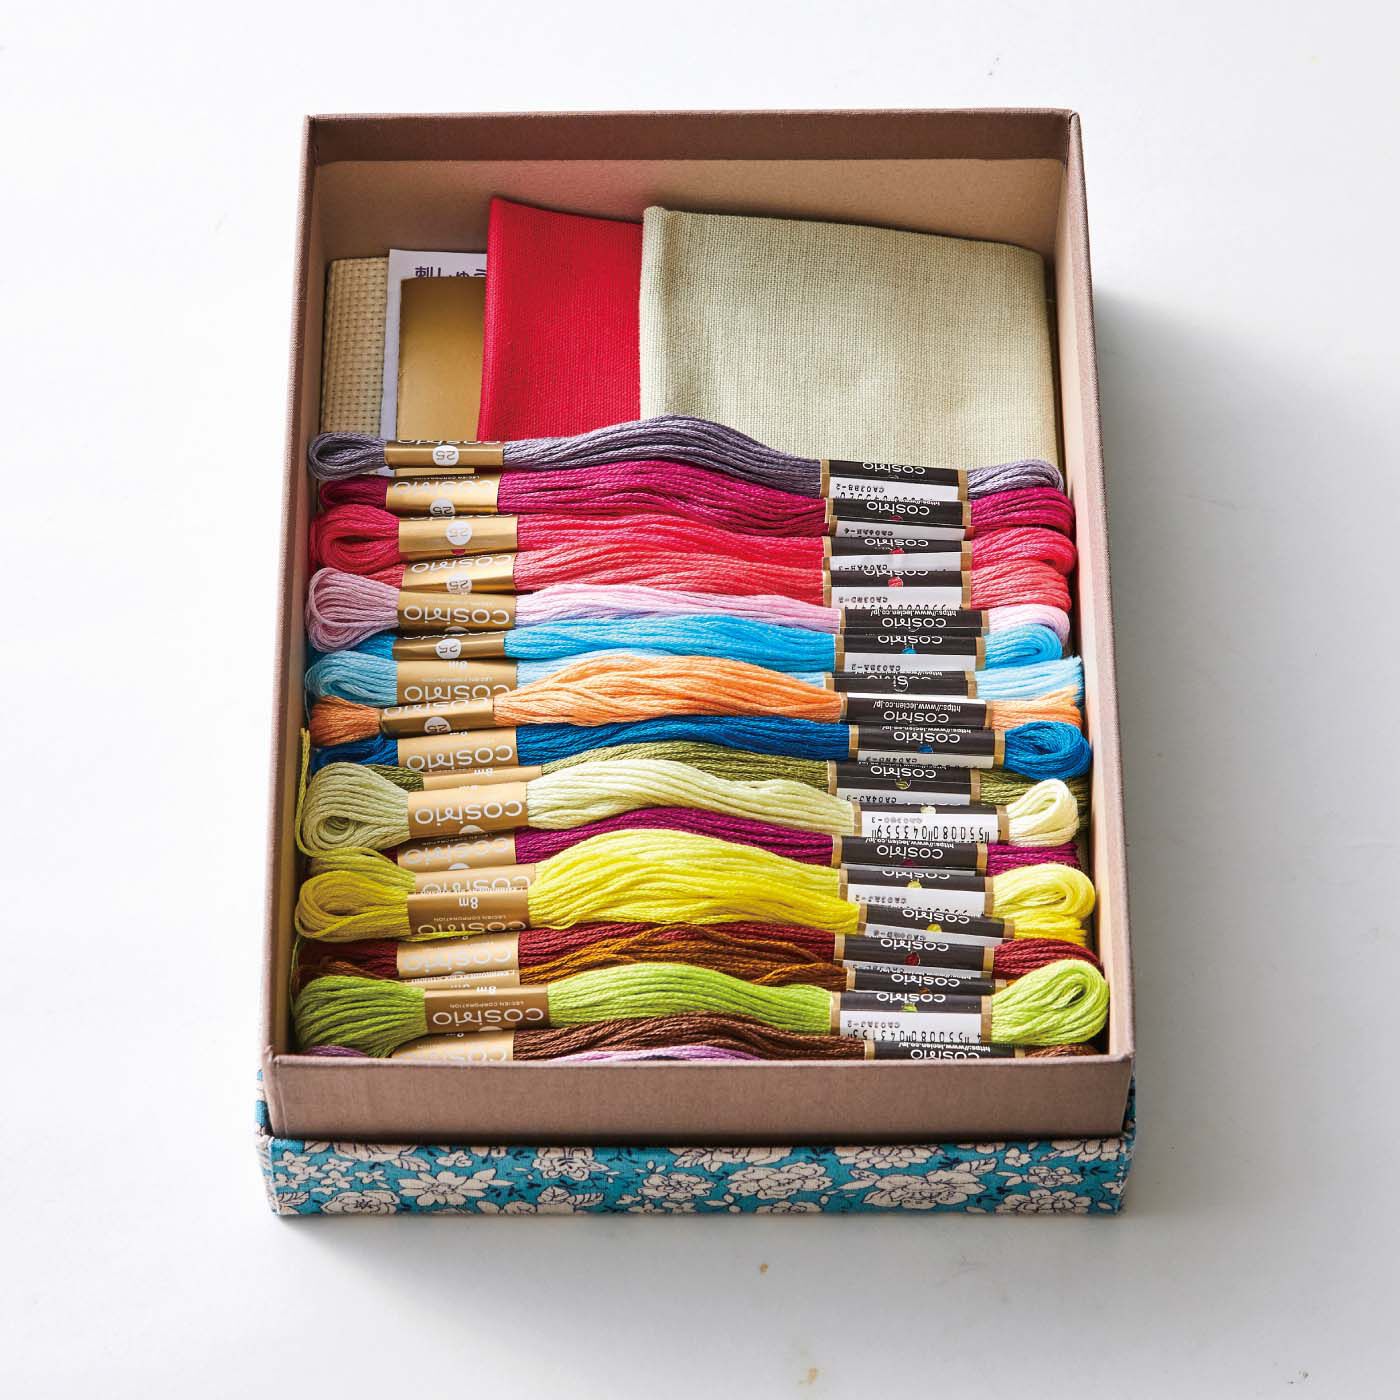 Real Stock|花柄綿麻クロスで作った布張り箱|刺しゅう糸がぴったり入るサイズ。（刺しゅう糸や材料はセットされていません）